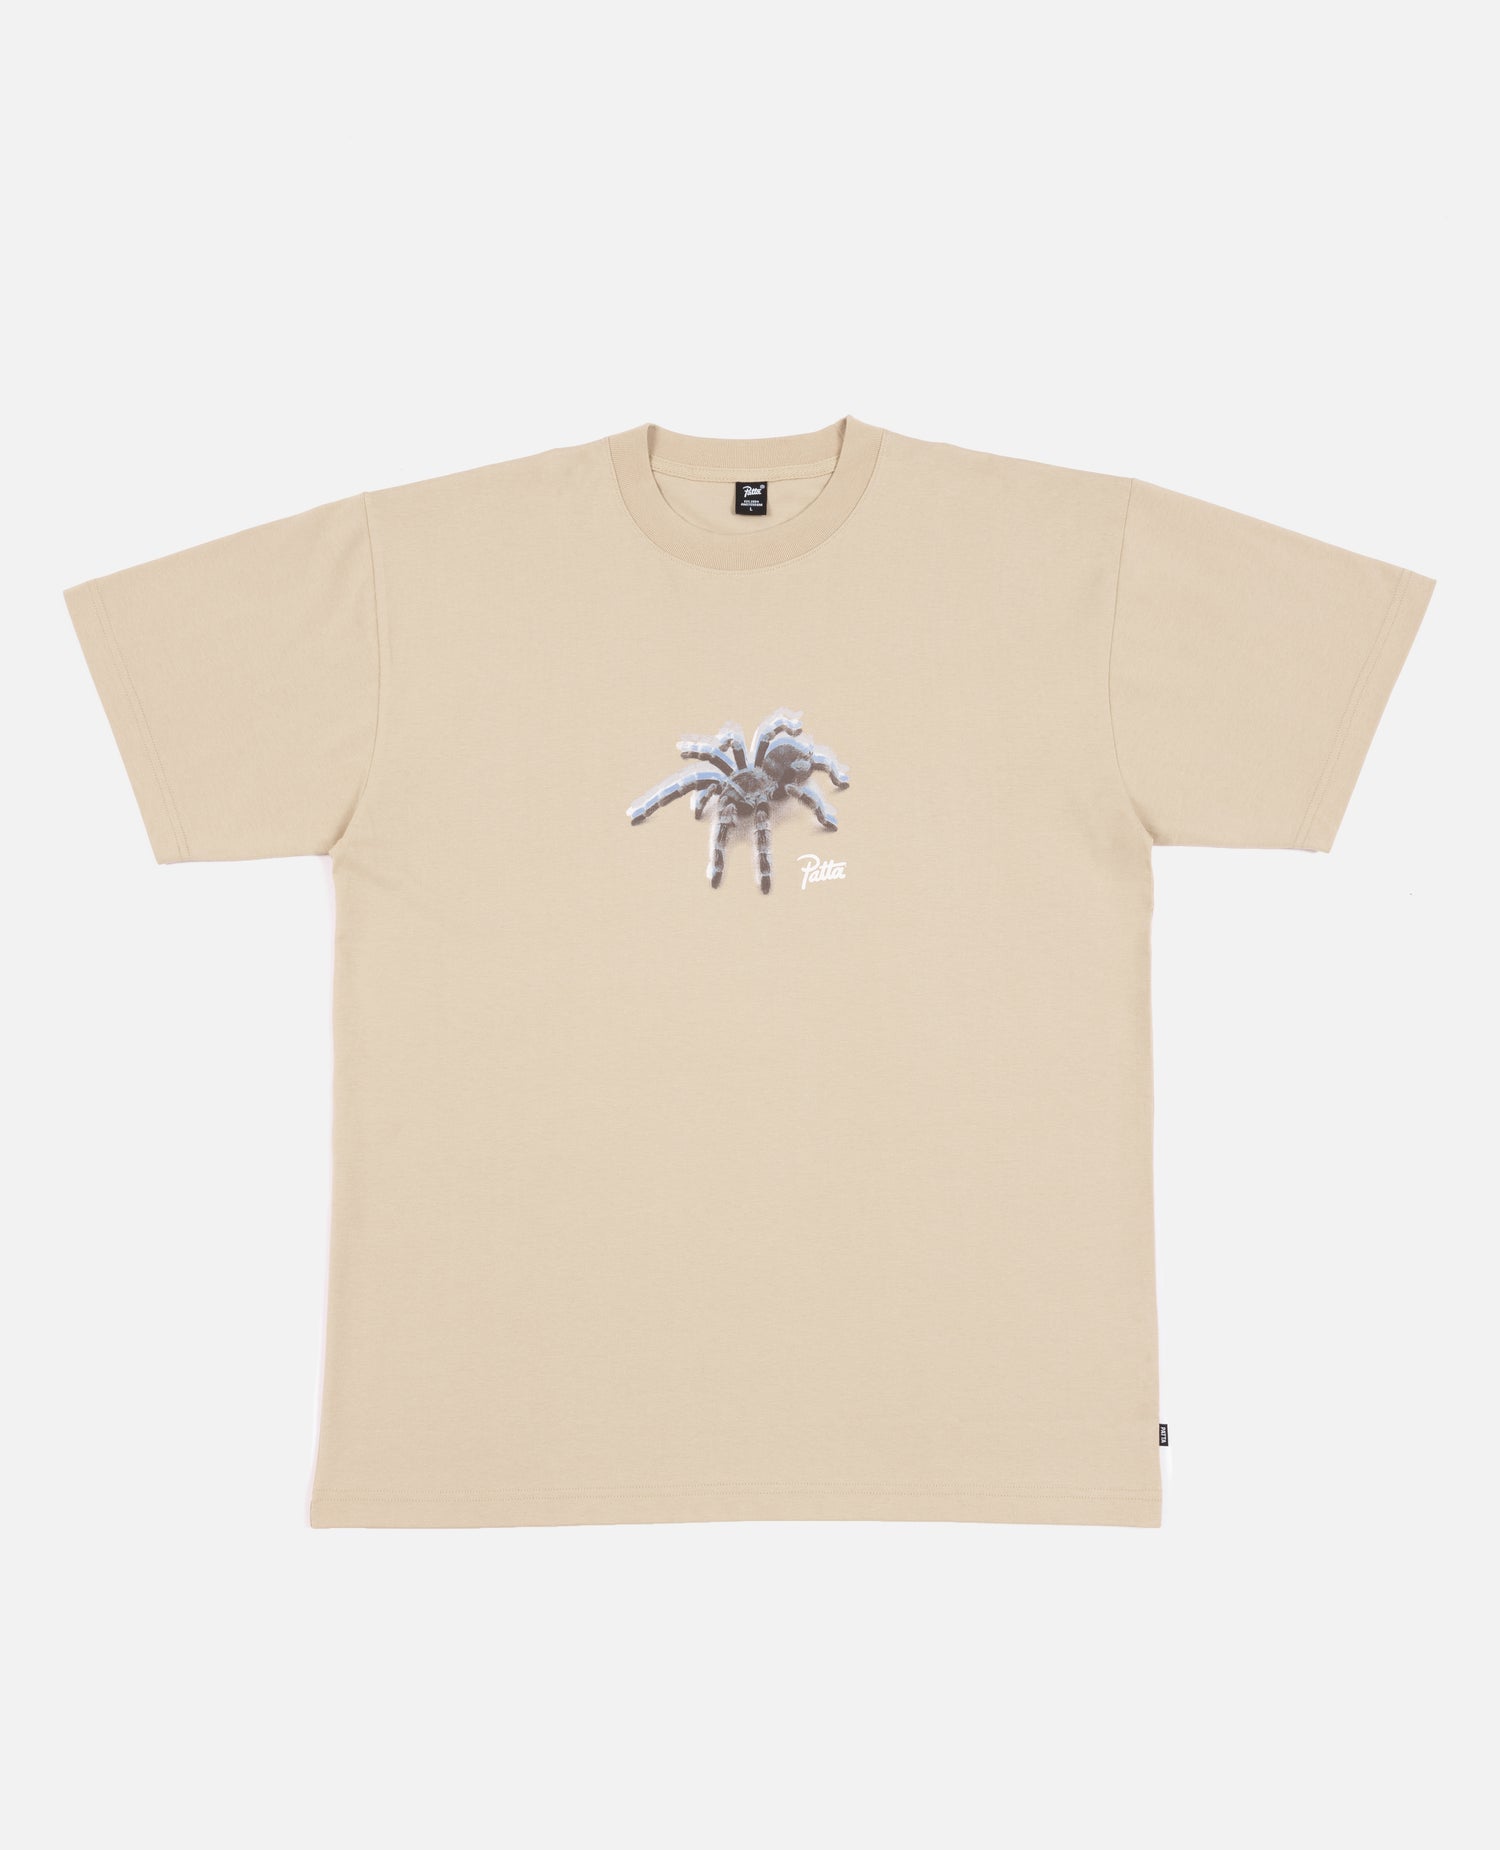 T-shirt Patta Spider (pepe bianco)